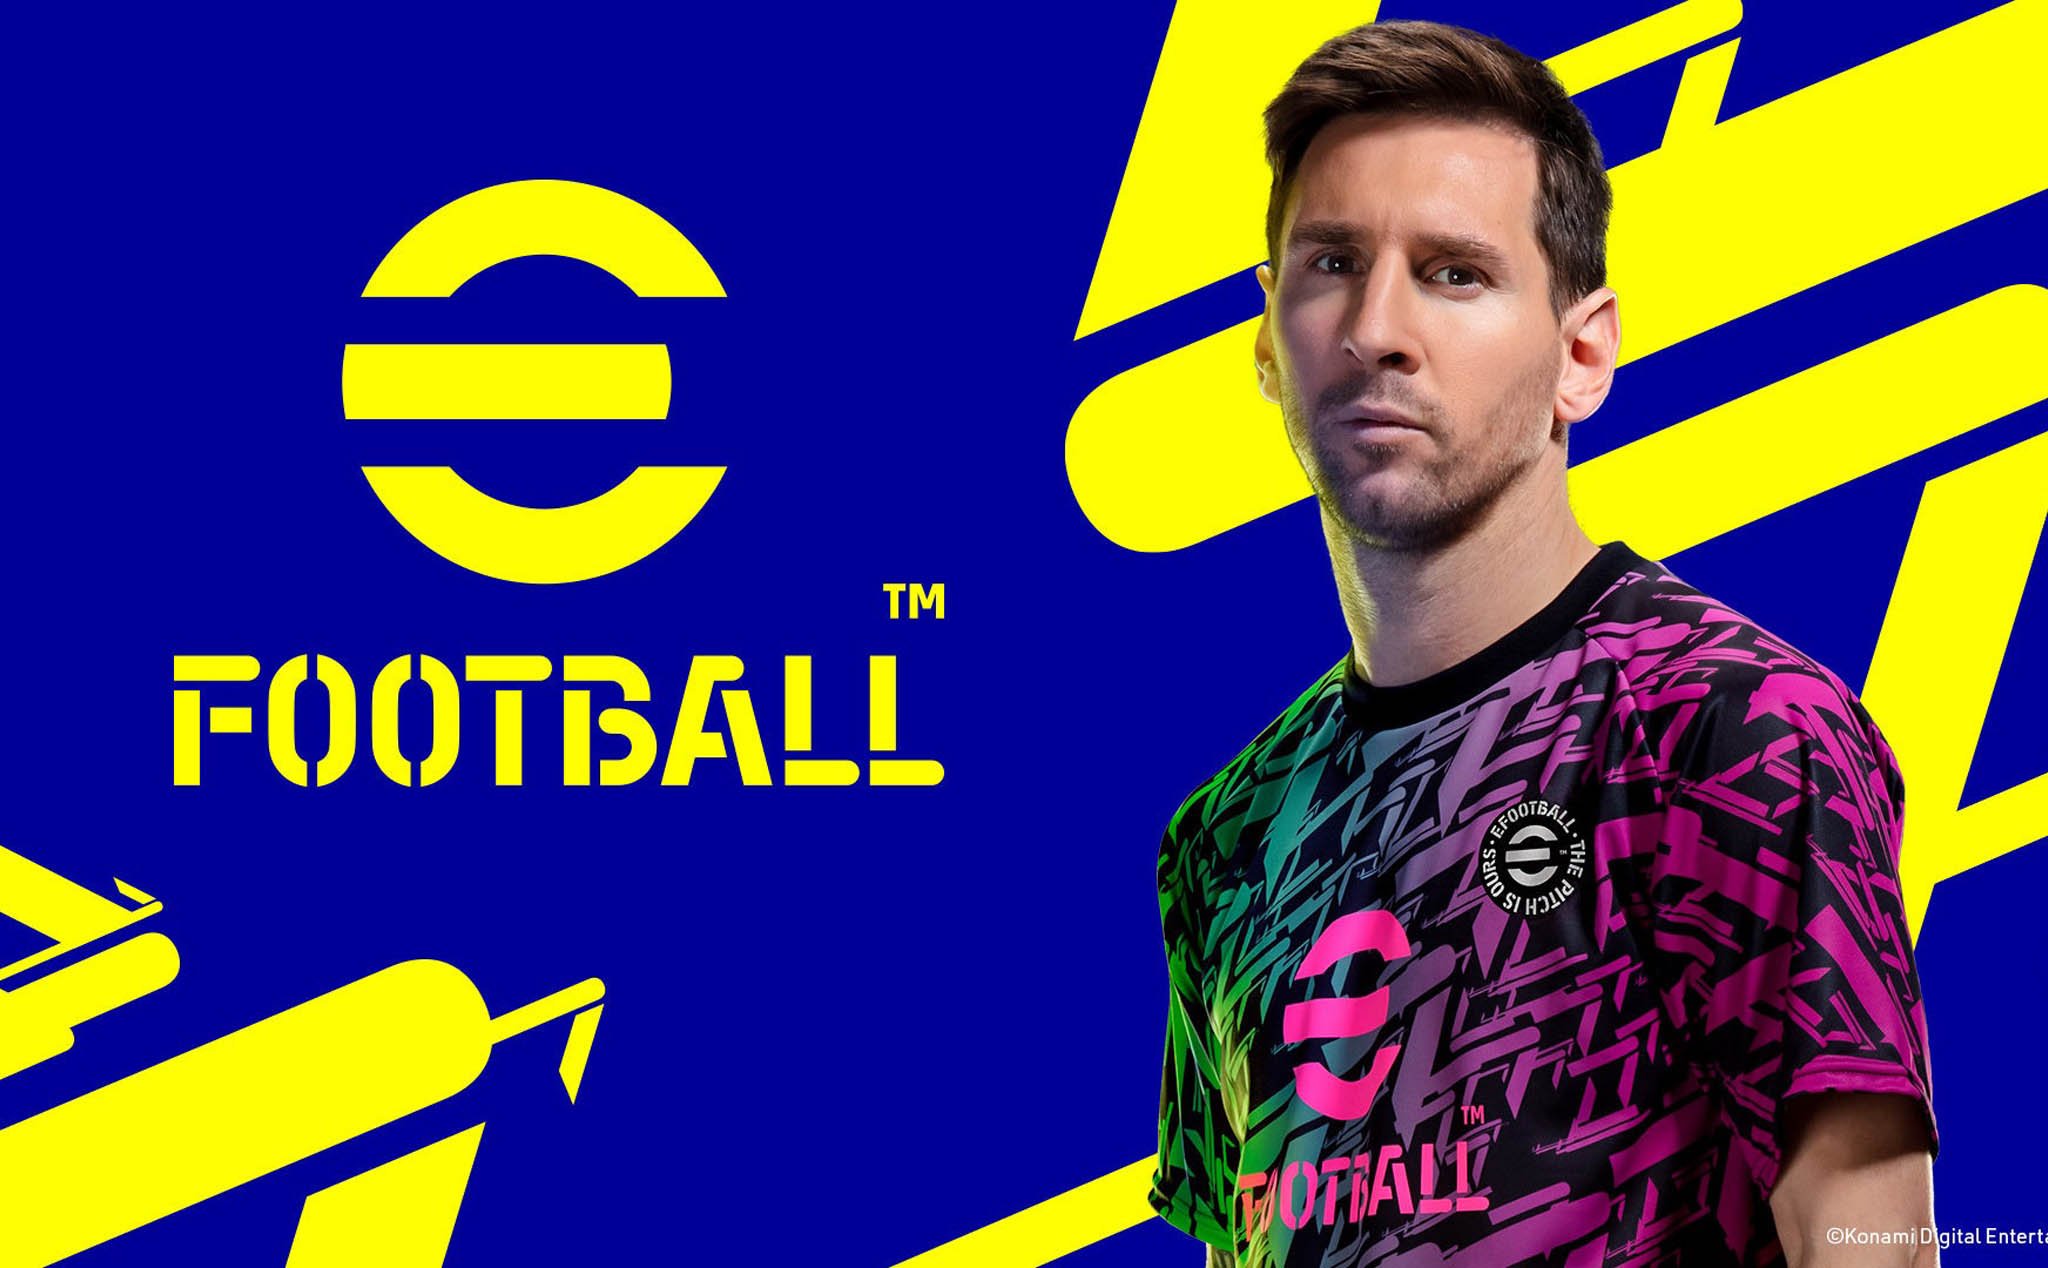 PES đổi tên thành eFootball, phiên bản năm nay miễn phí hoàn toàn trên PC, PS, Xbox, iOS và Android